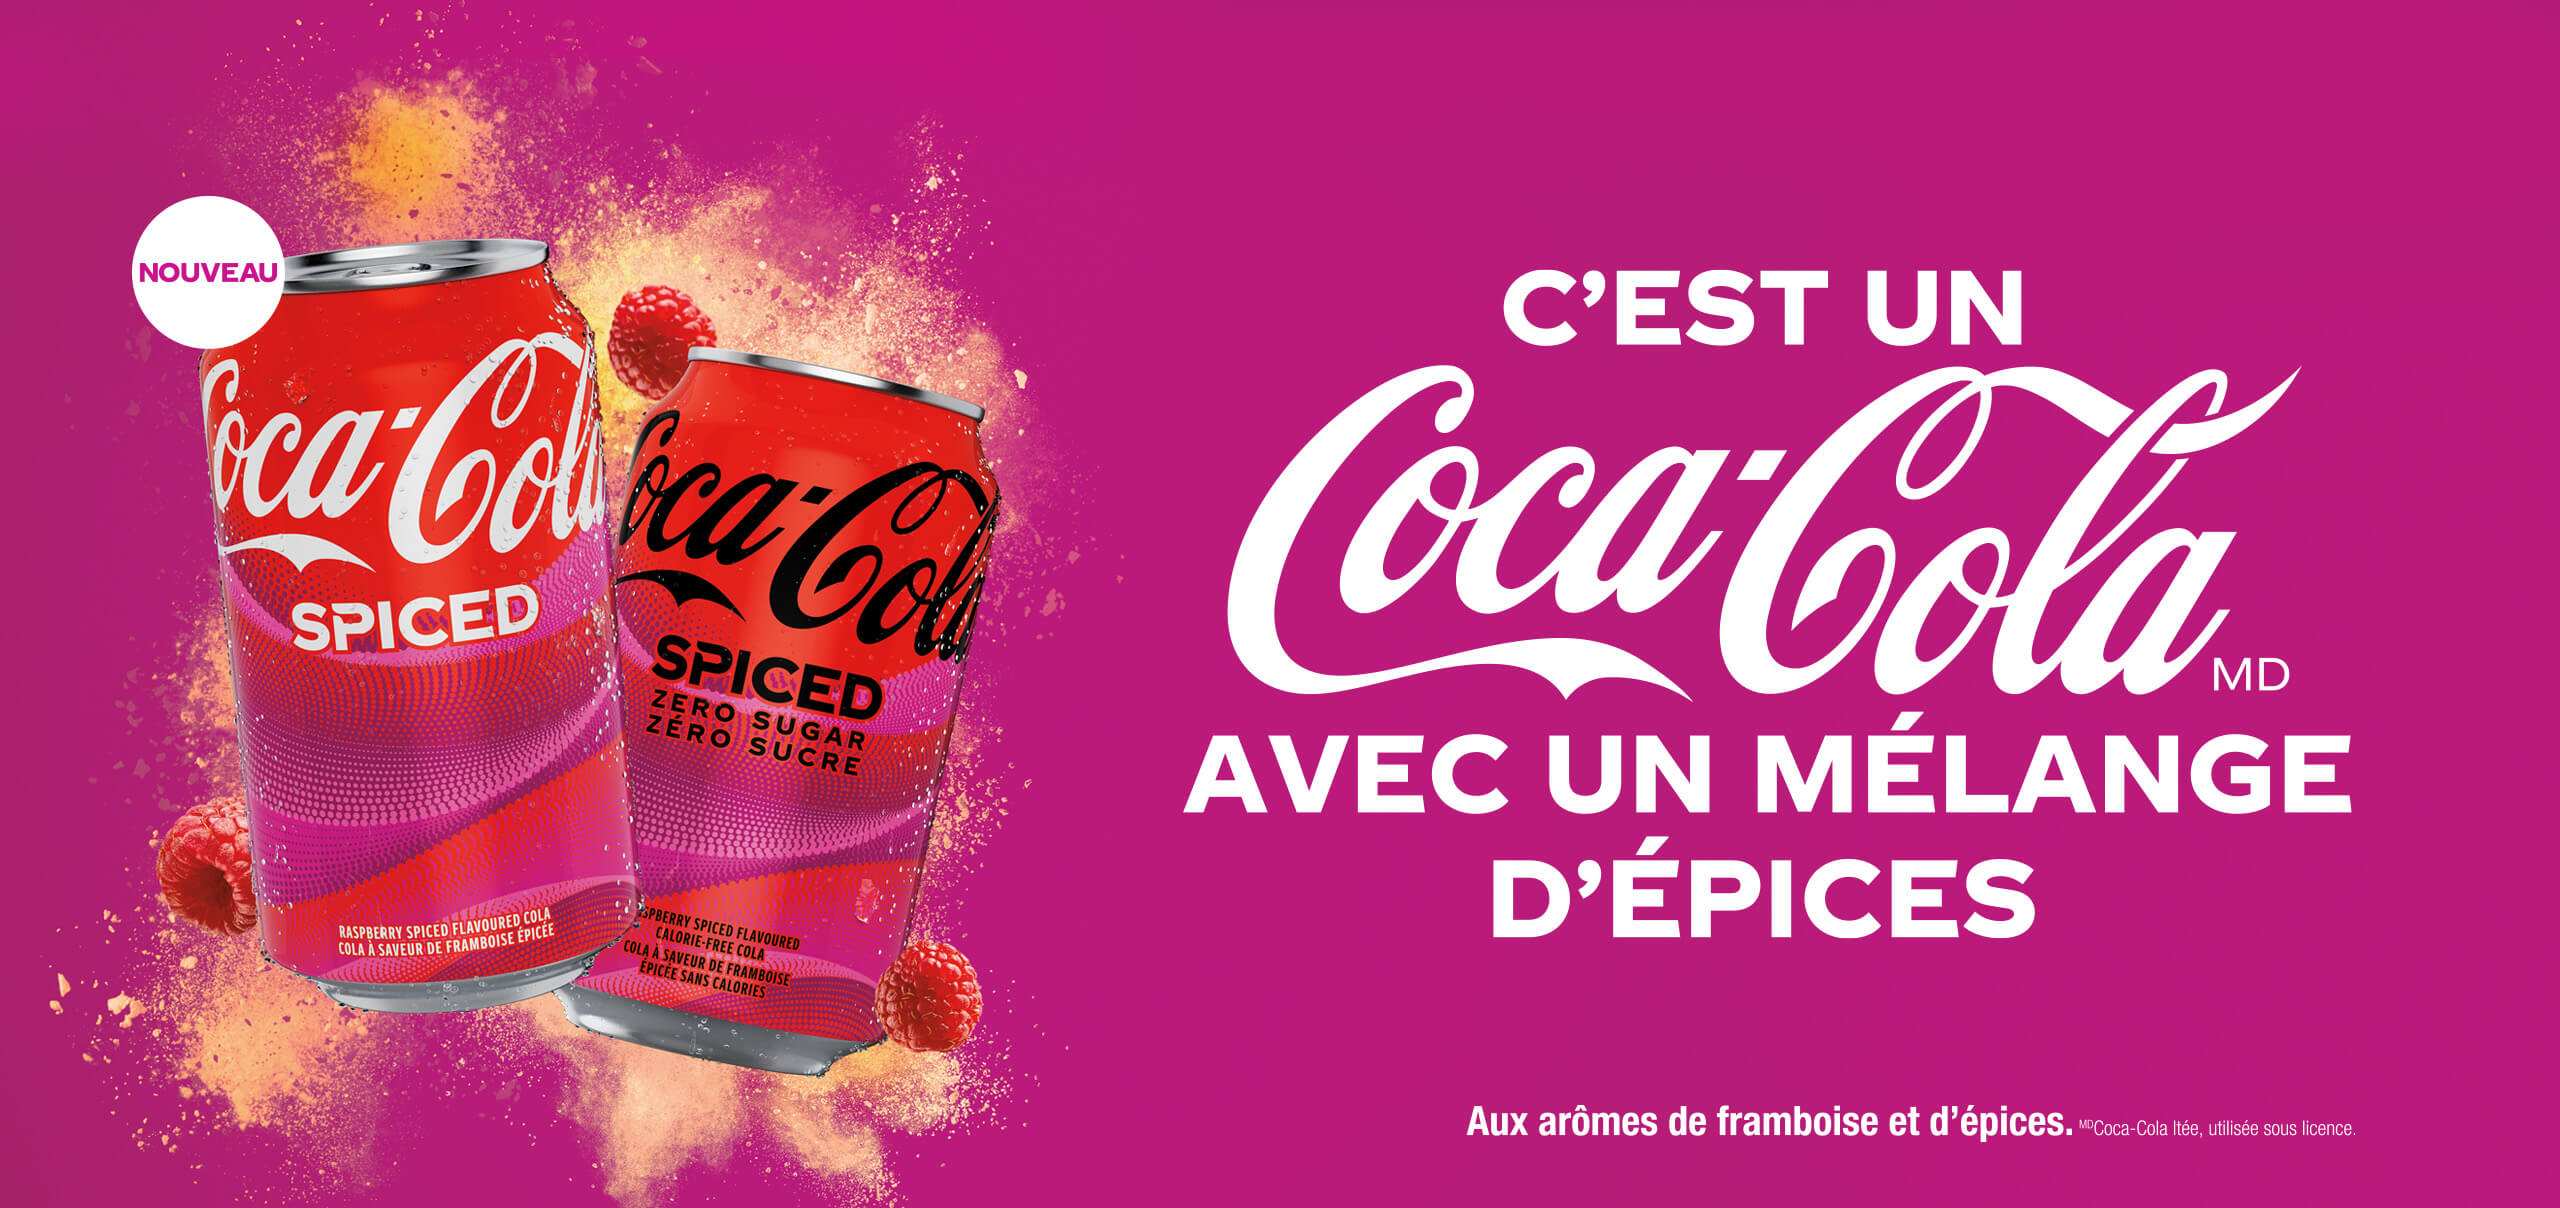 C'est Coca-Cola avec un melange d'espices